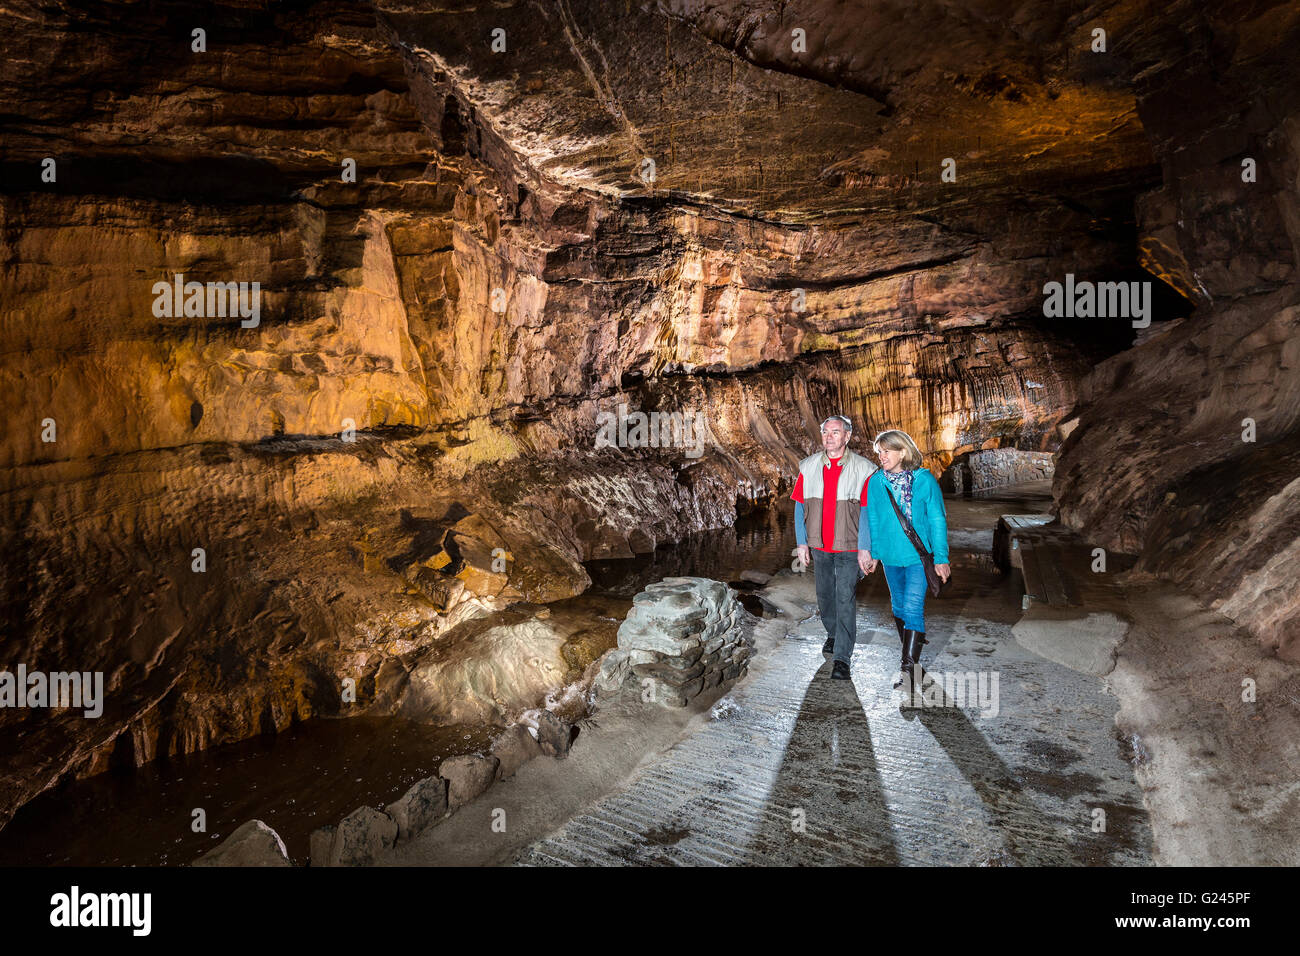 Grotte de la cathédrale, le Parc National des Brecon Beacons, Powys, Wales, UK Banque D'Images